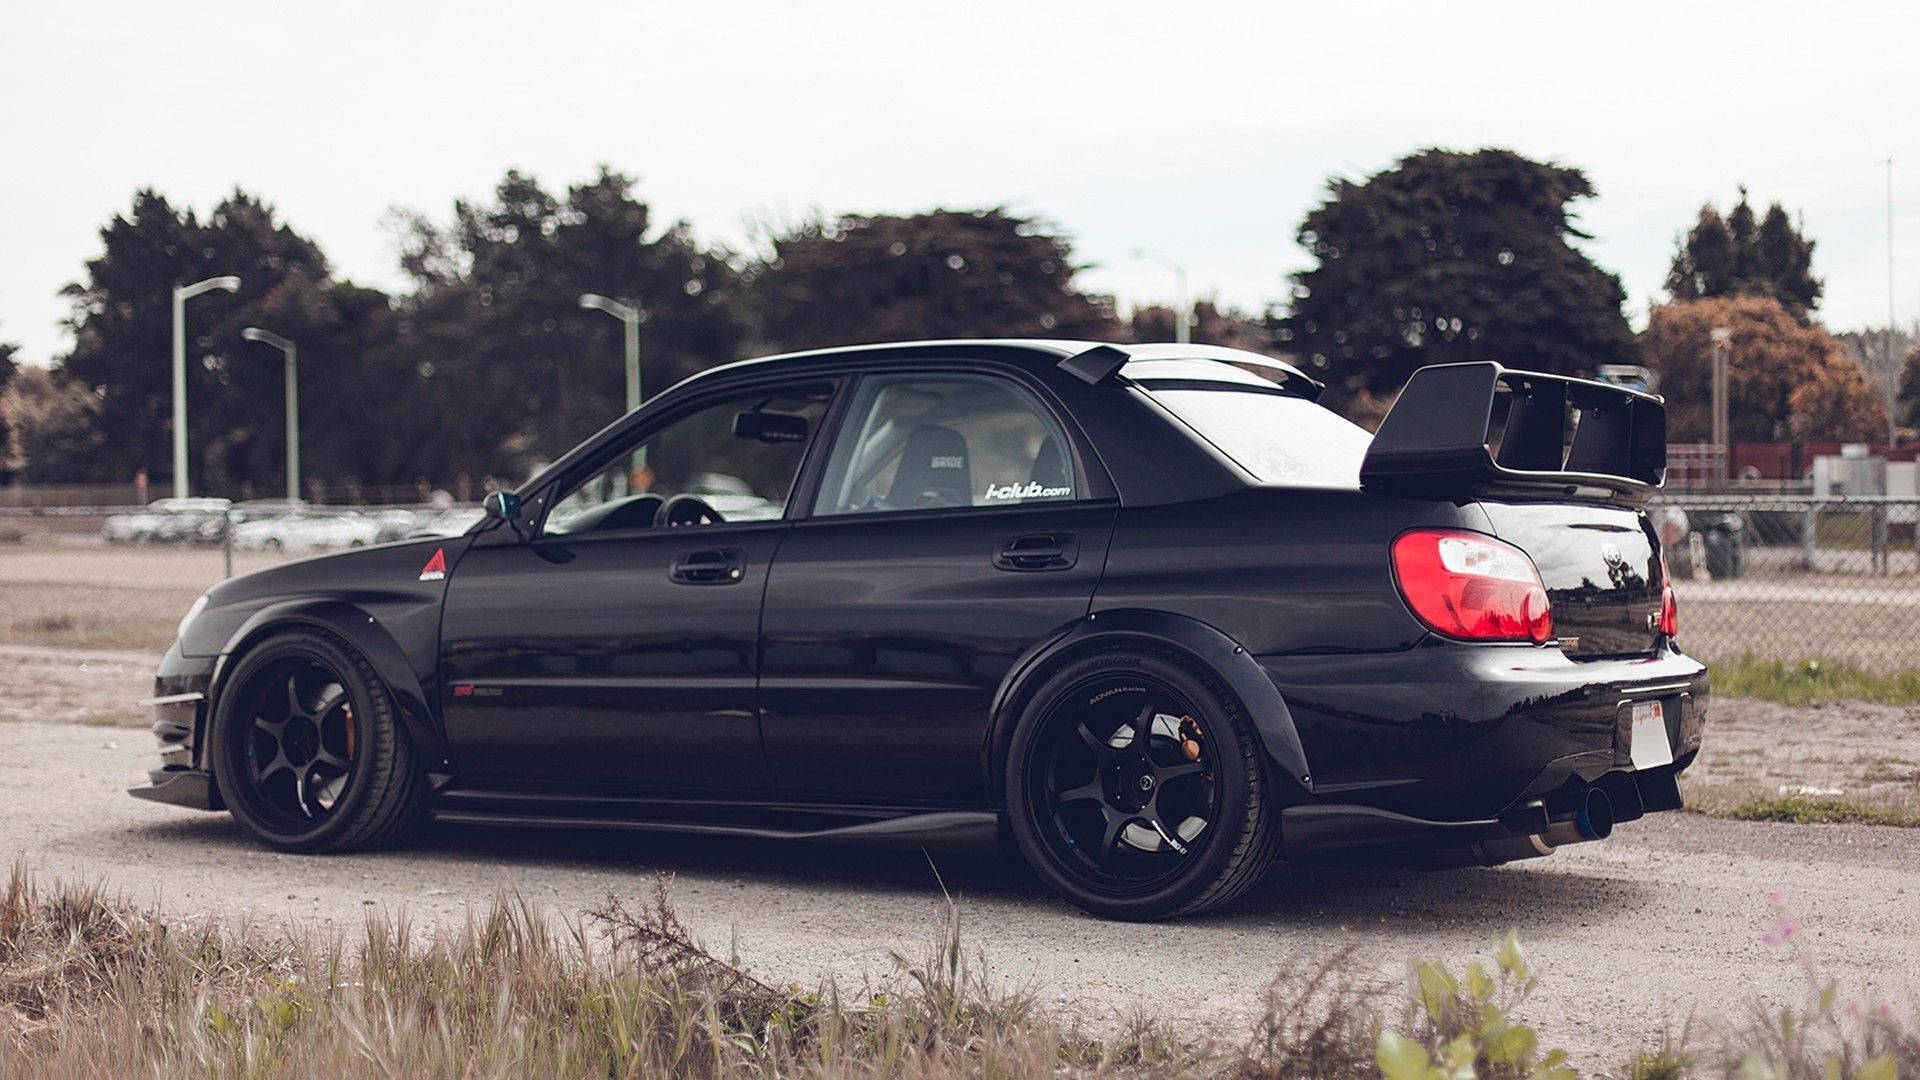 All-black Subaru Car